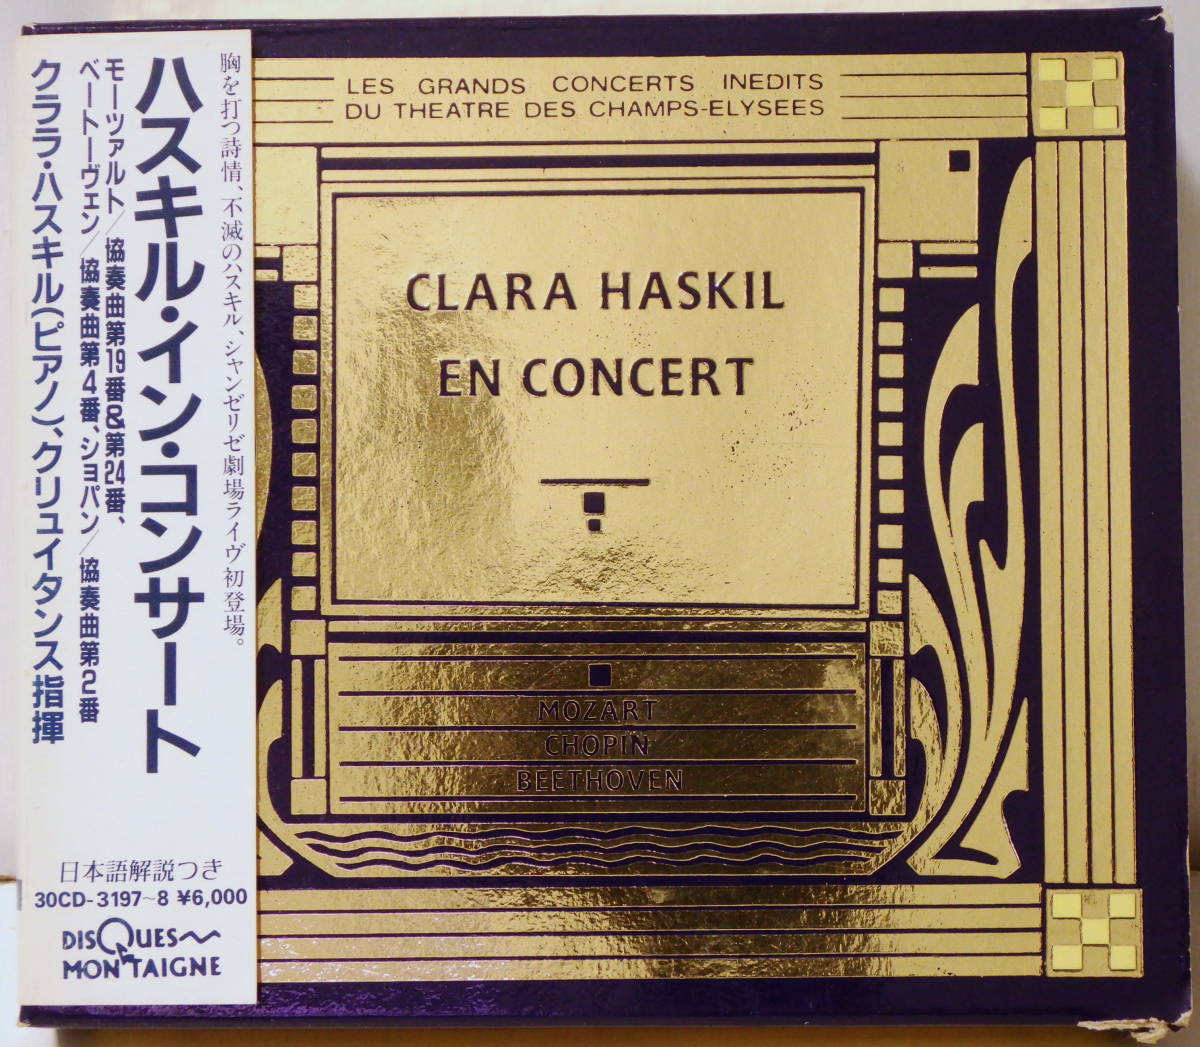 仏盤 日本国内仕様 ハスキル イン コンサート 2CD CLARA HASKIL EN CONCERT DISQUES MONTAIGNE 30CD-3197~8 MADE IN FRANCE